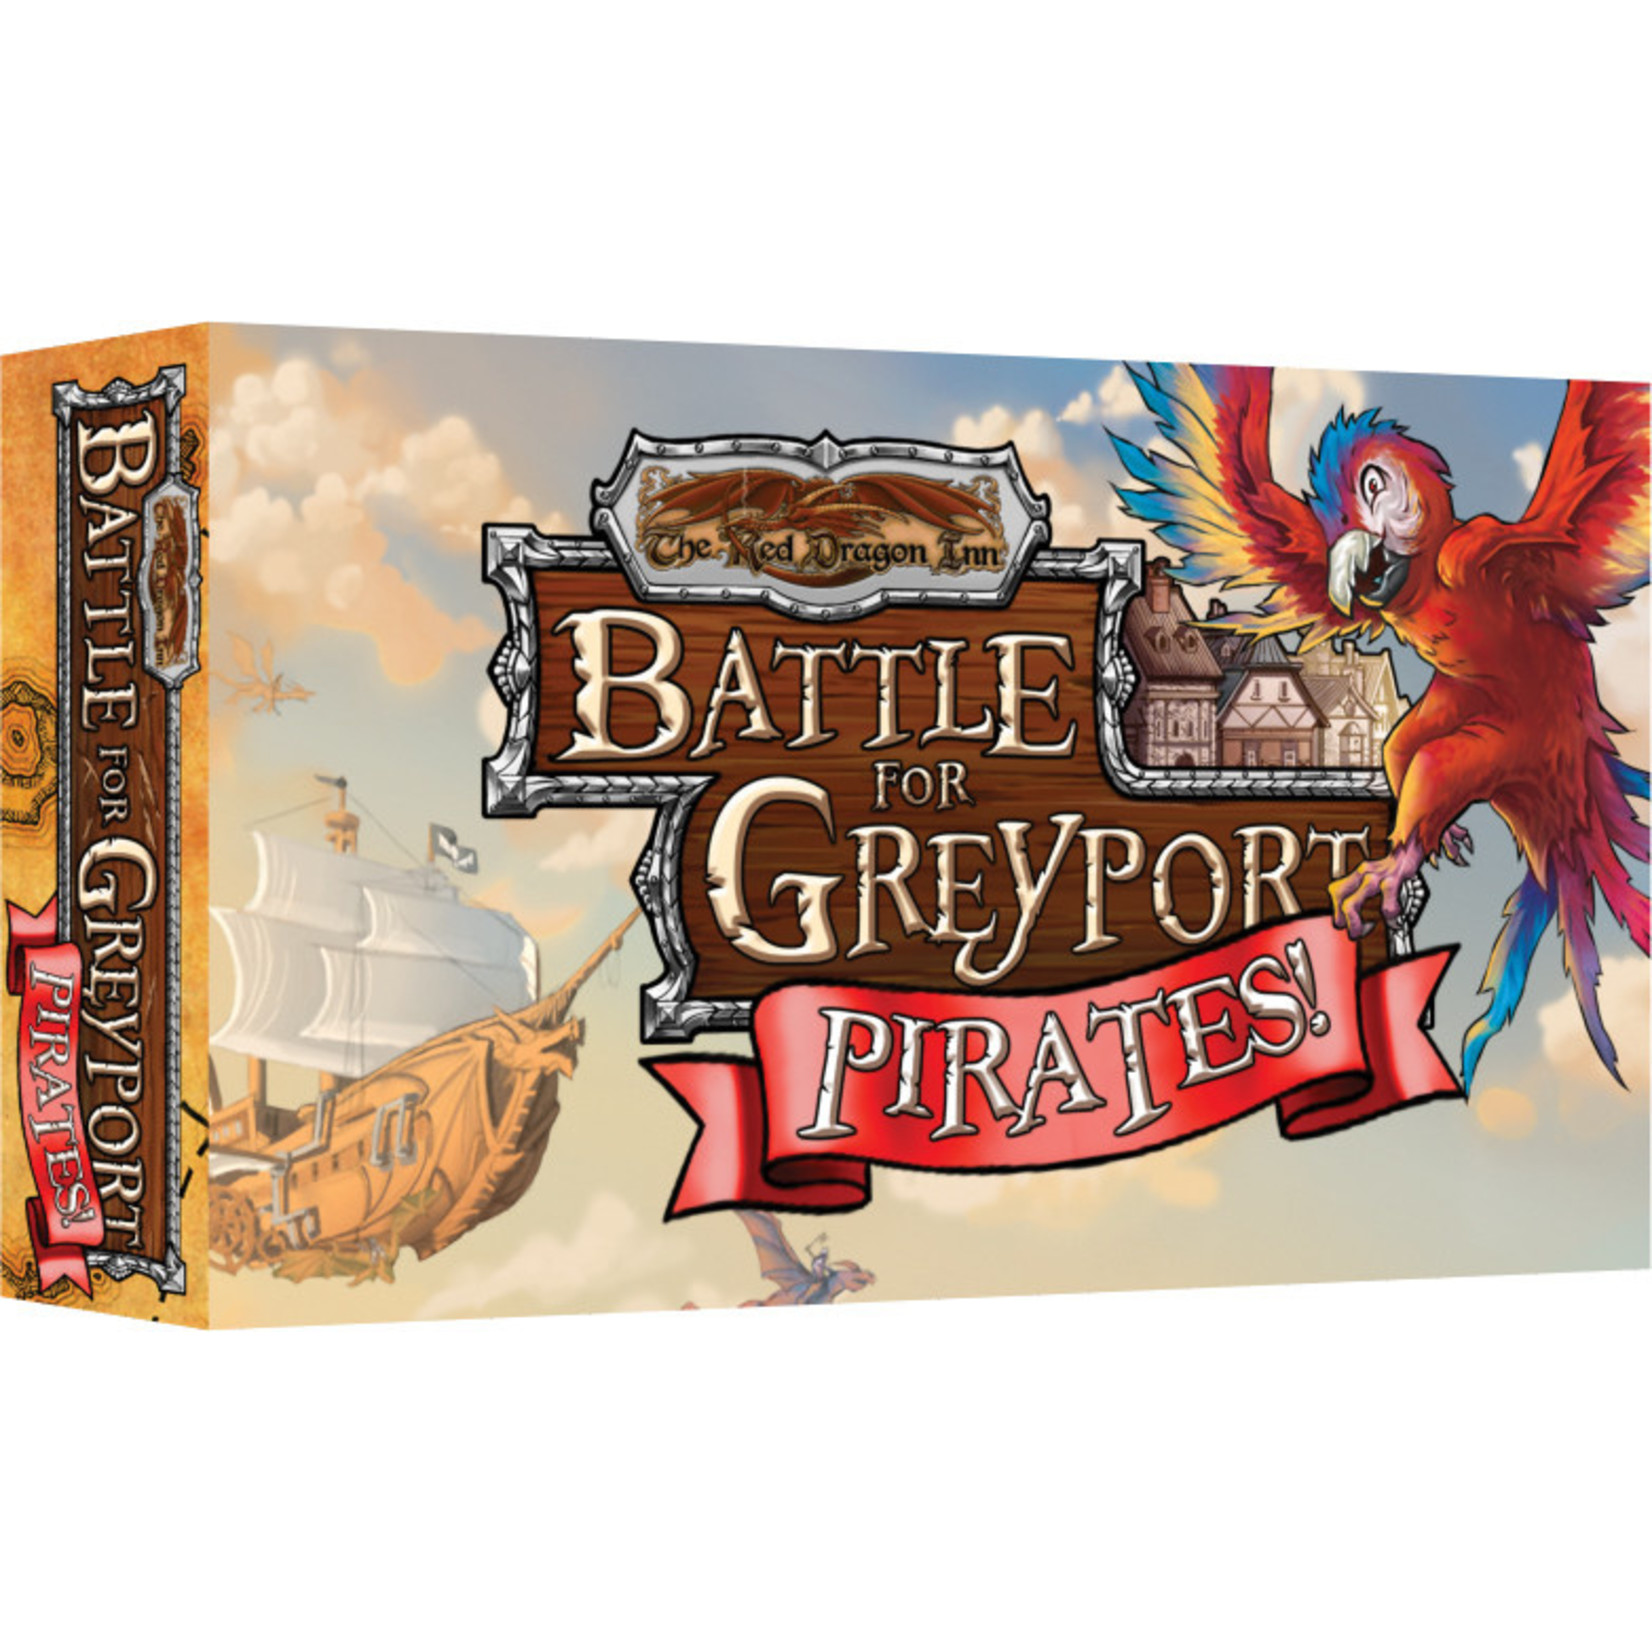 Slugfest Games Red Dragon Inn Battle for Greyport Pirates